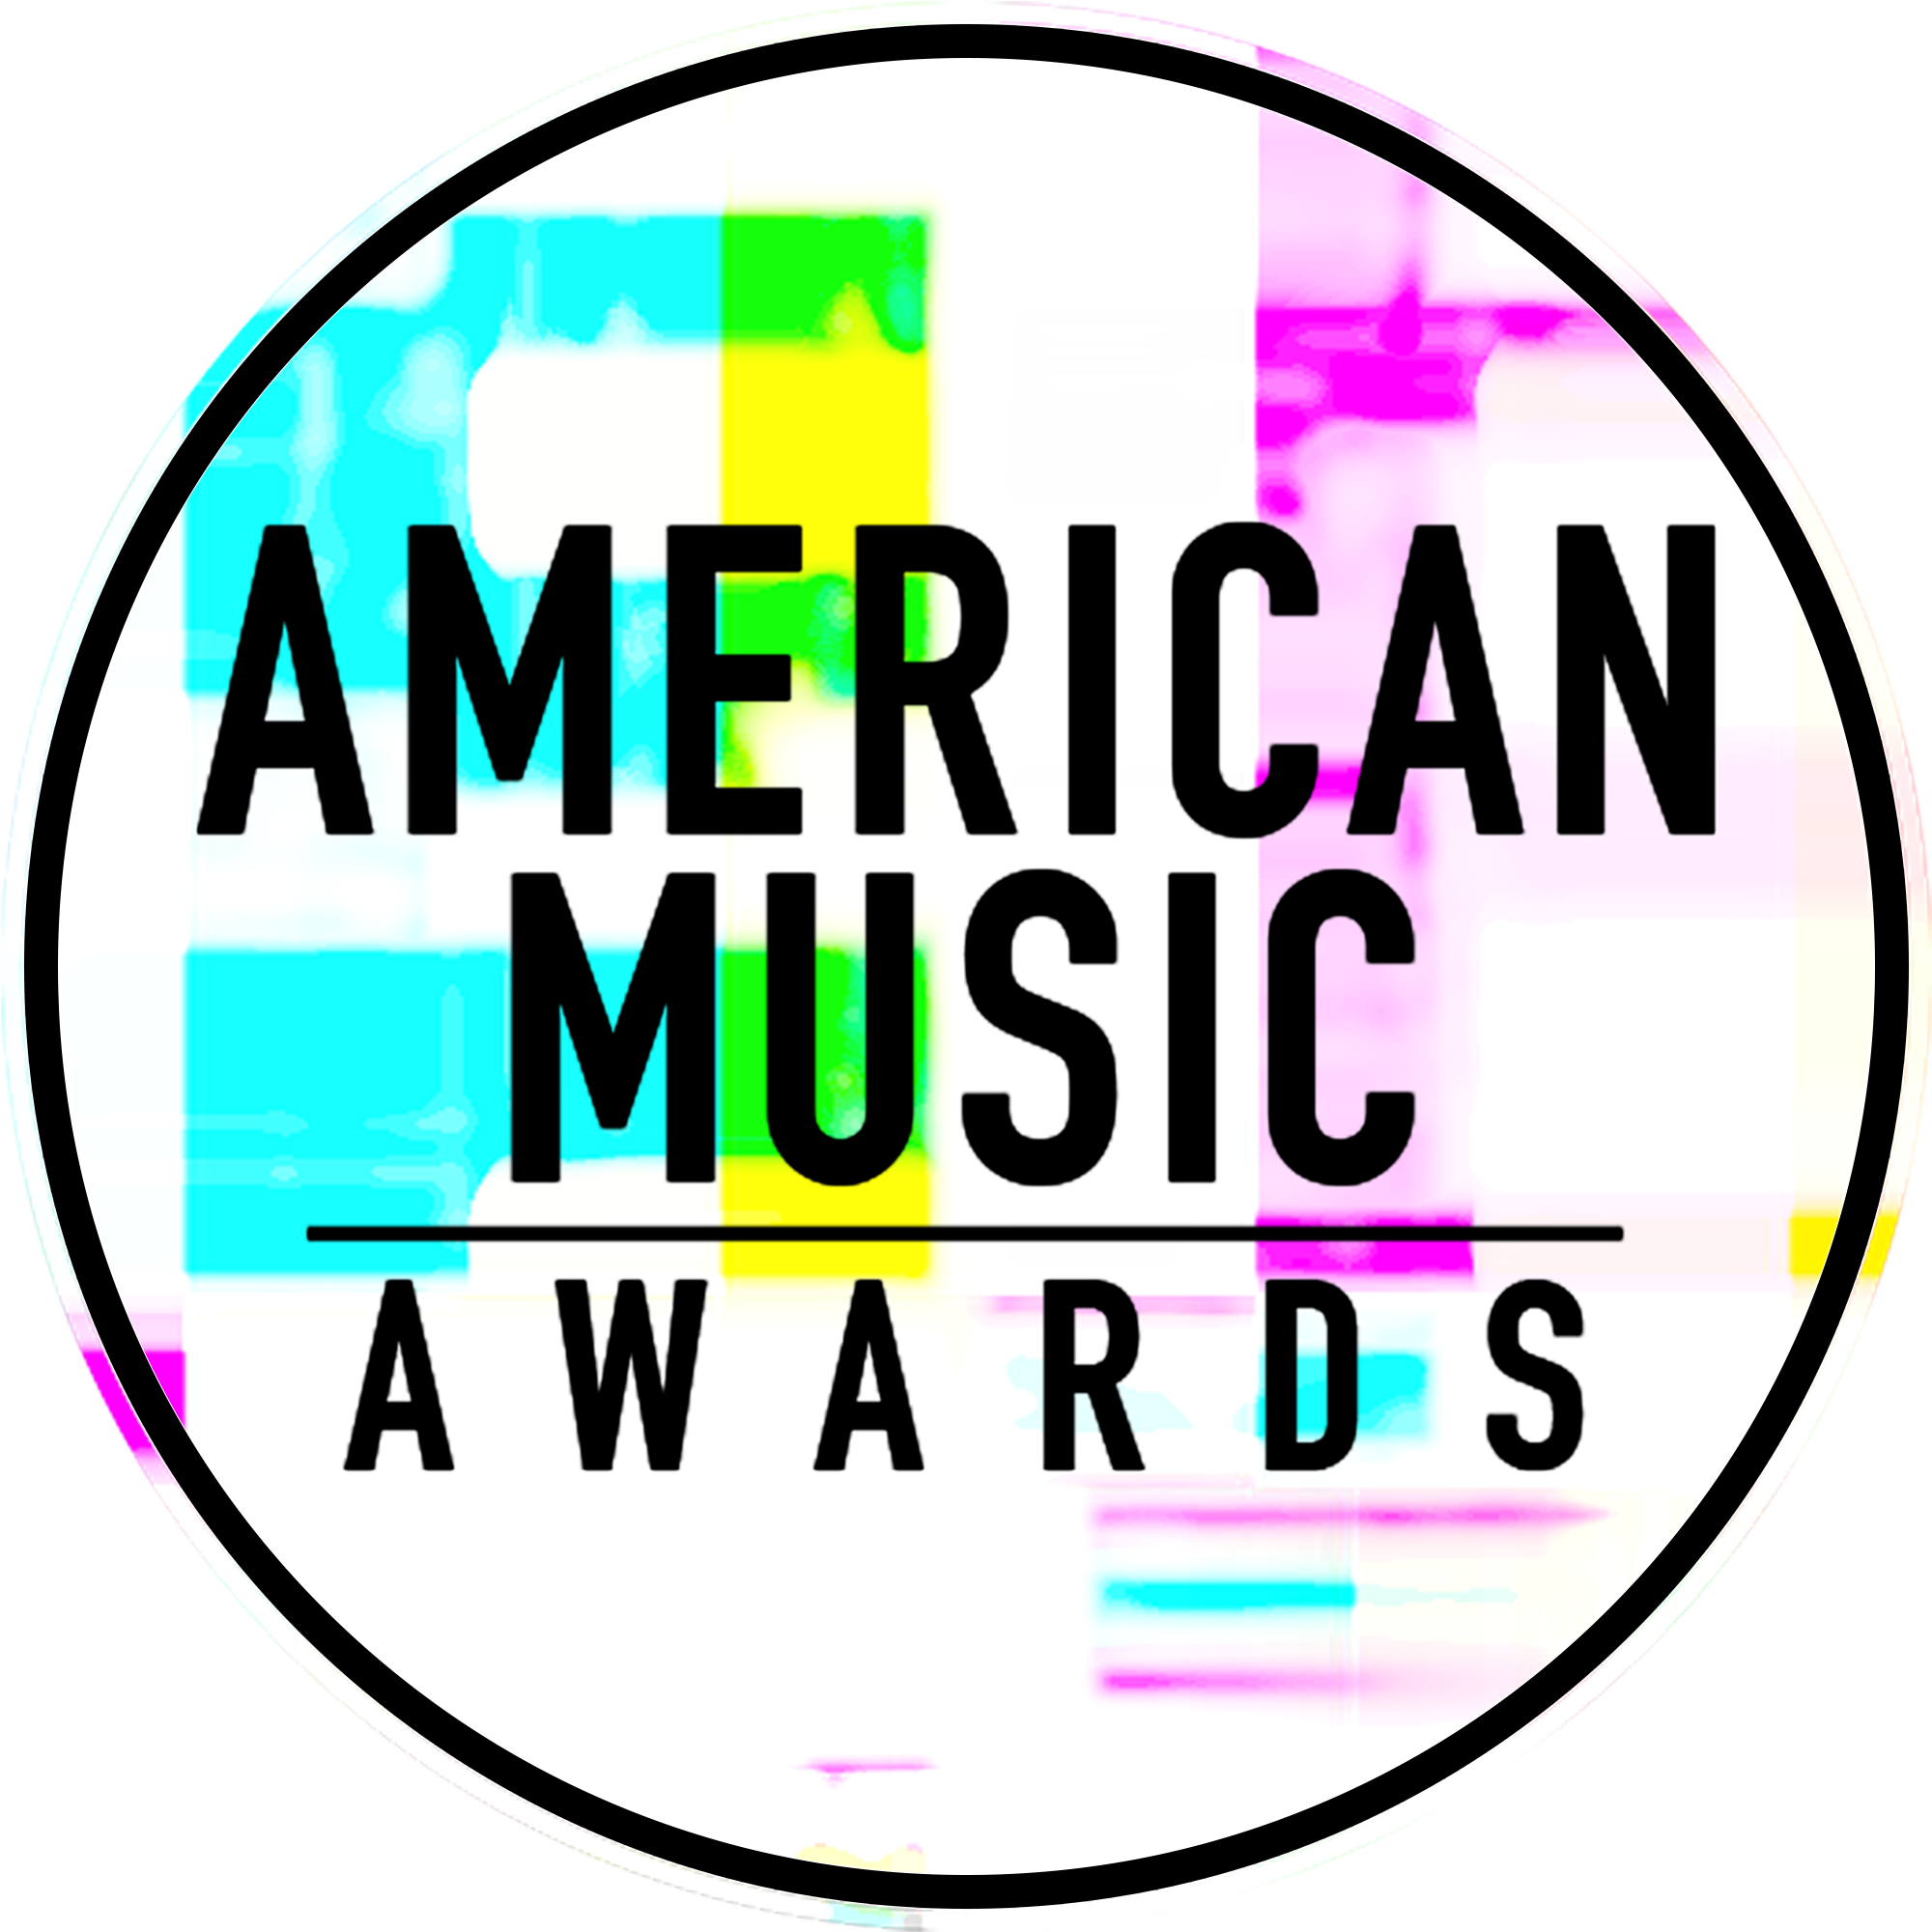 American Music Awards - American Music Awards (2000x2000)